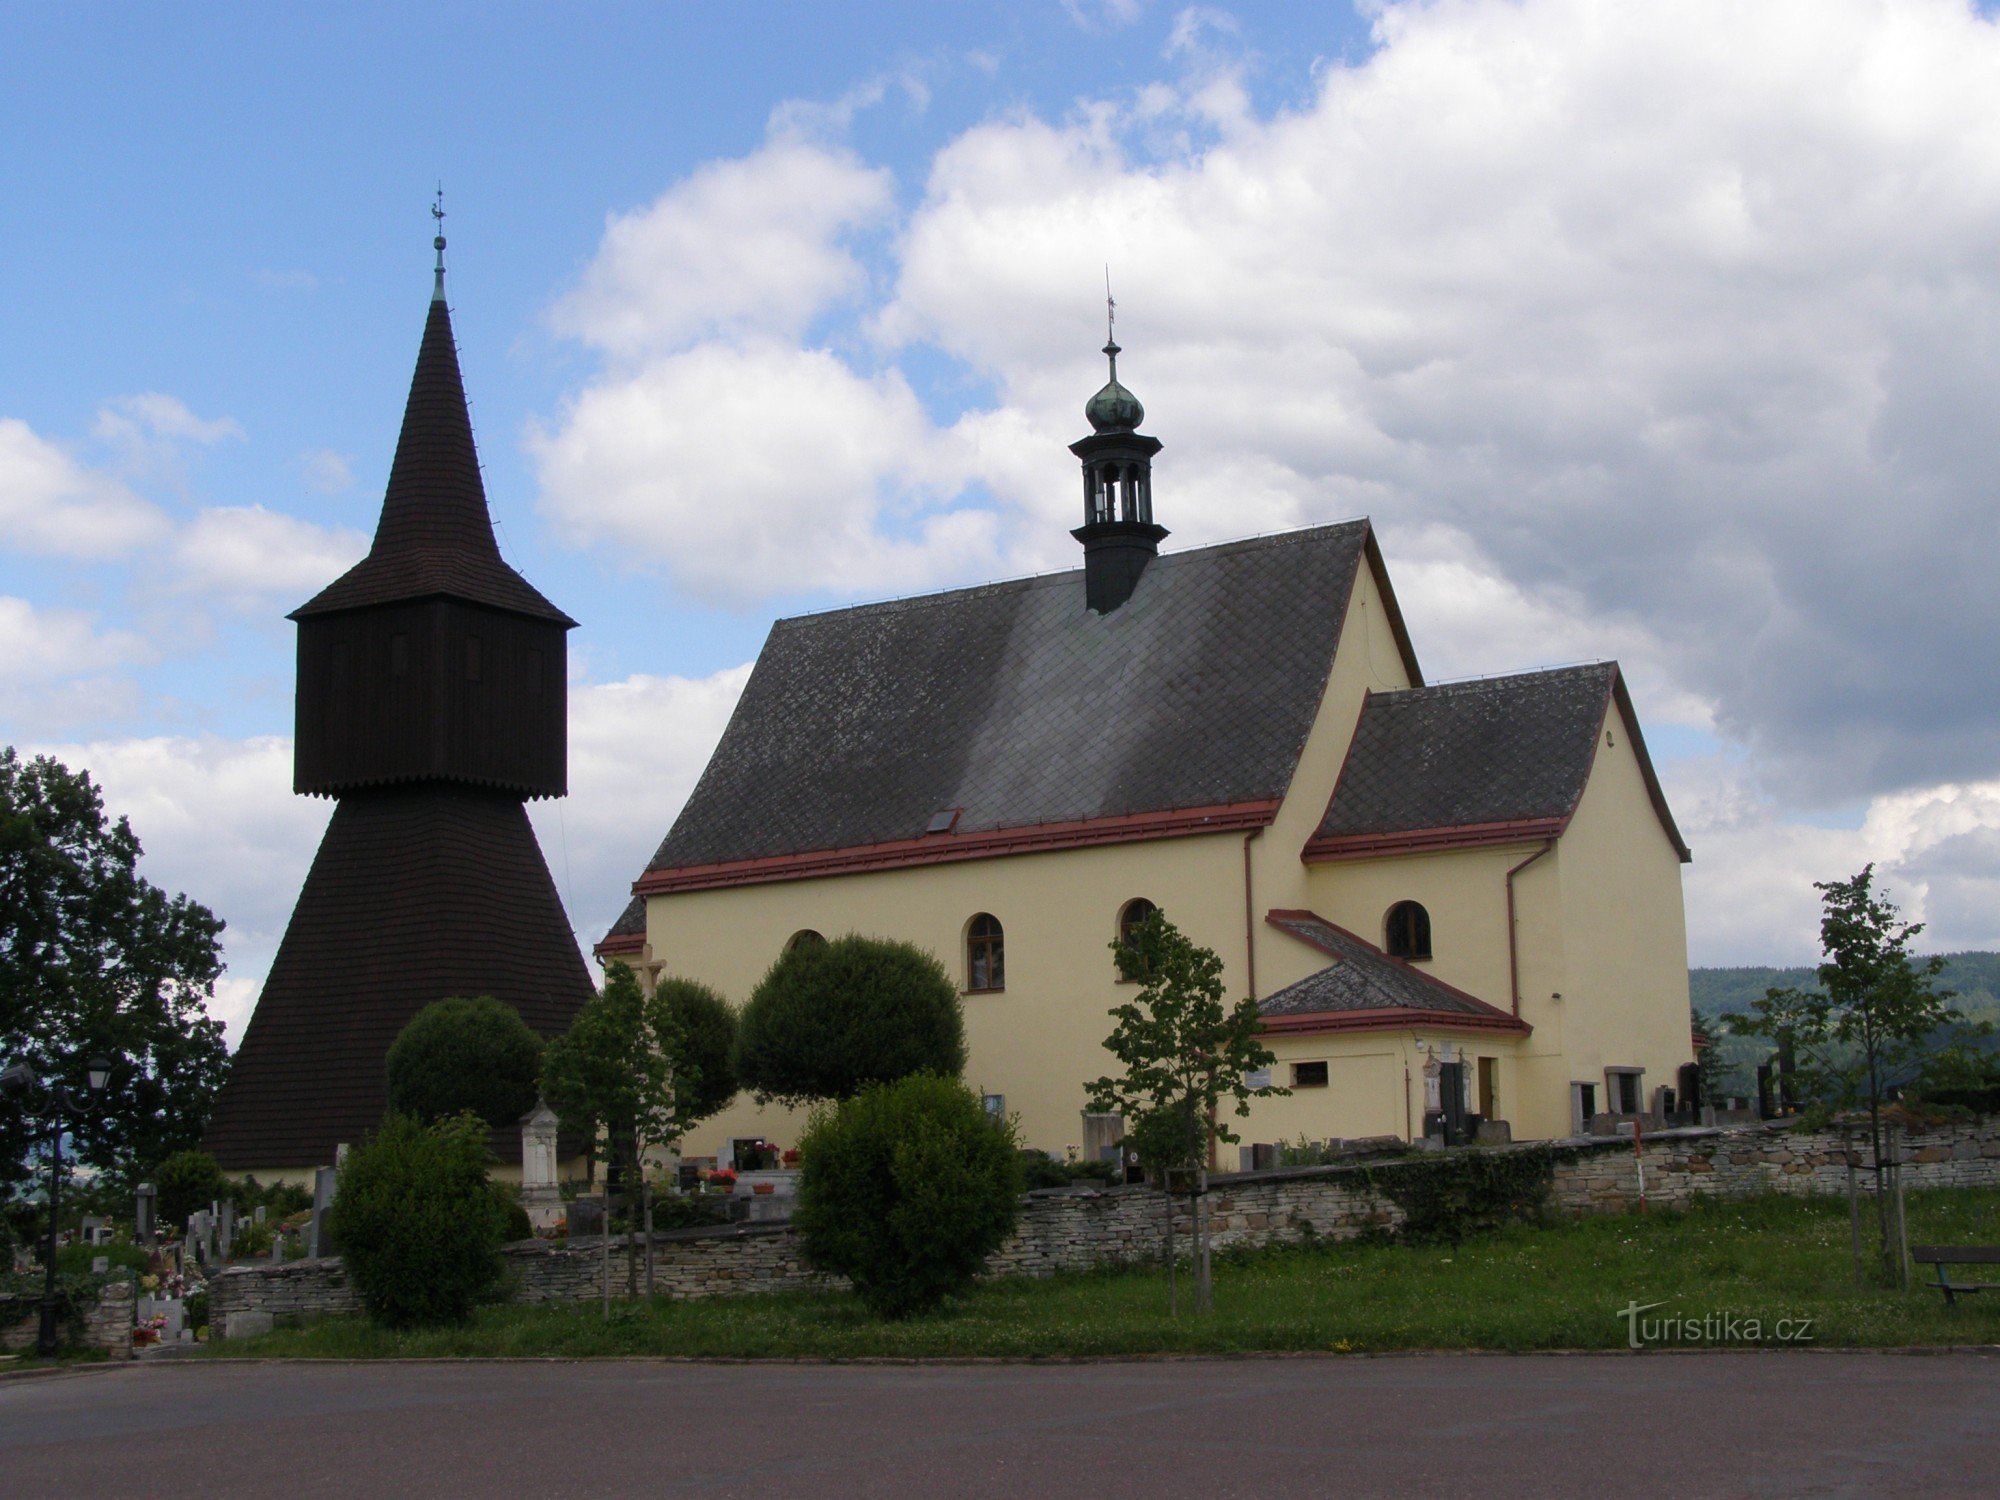 Rtyne u Podkrkonoší - crkva sv. Ivana Krstitelja sa zvonikom